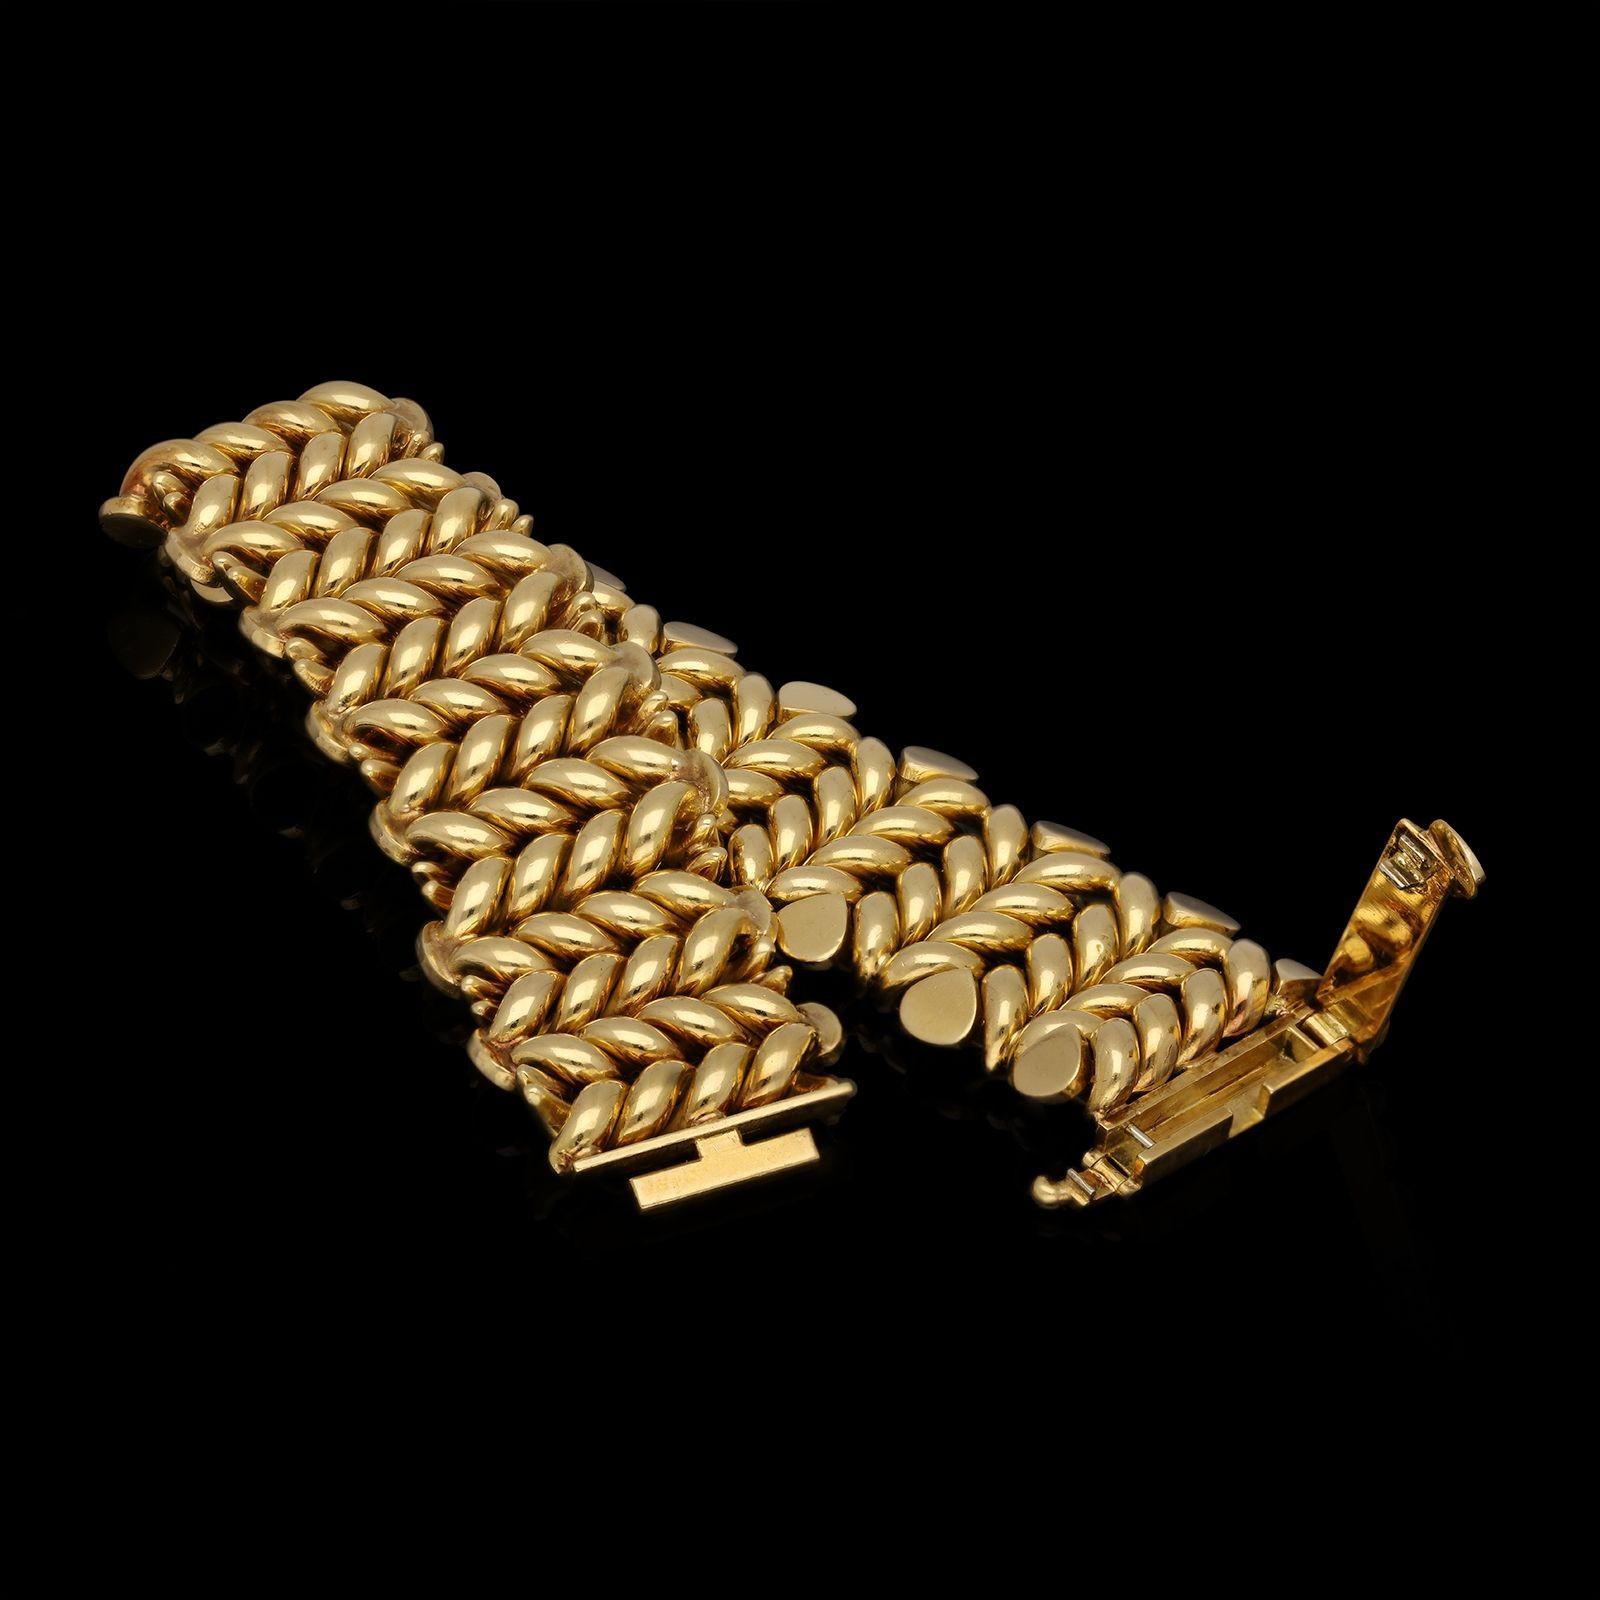 Magnifique bracelet en or français de Mauboussin, datant des années 1970, composé de maillons torsadés et uniformes, bordés de rangées de motifs angulaires en forme de poire, le tout en or jaune 18ct hautement poli, avec un fermoir dissimulé. Il